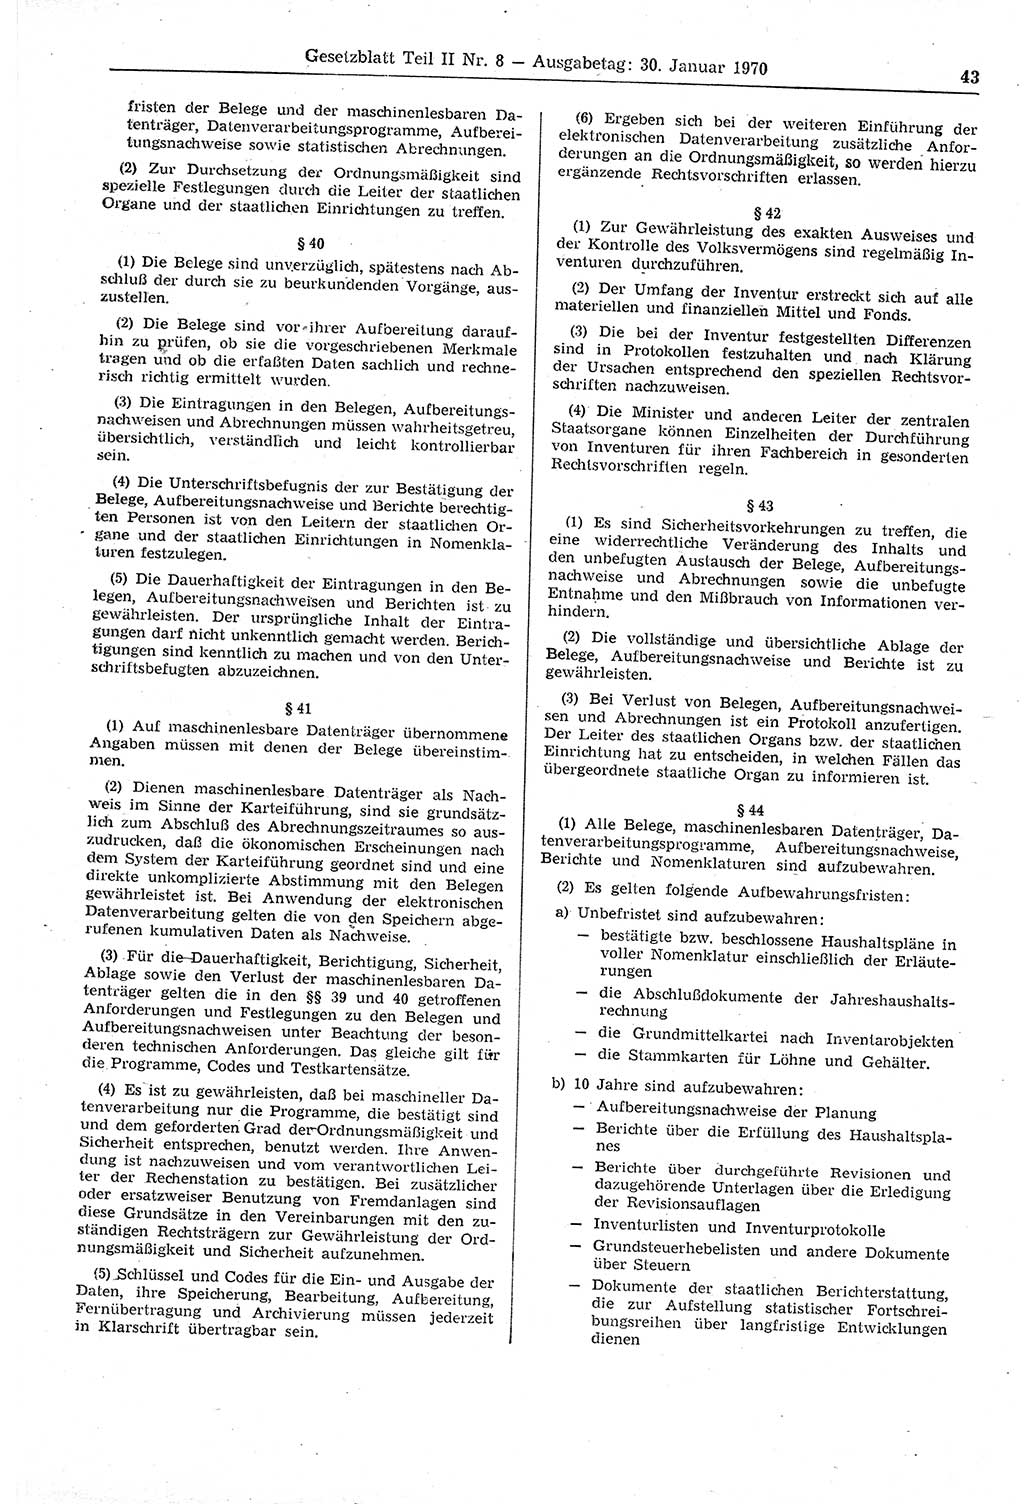 Gesetzblatt (GBl.) der Deutschen Demokratischen Republik (DDR) Teil ⅠⅠ 1970, Seite 43 (GBl. DDR ⅠⅠ 1970, S. 43)